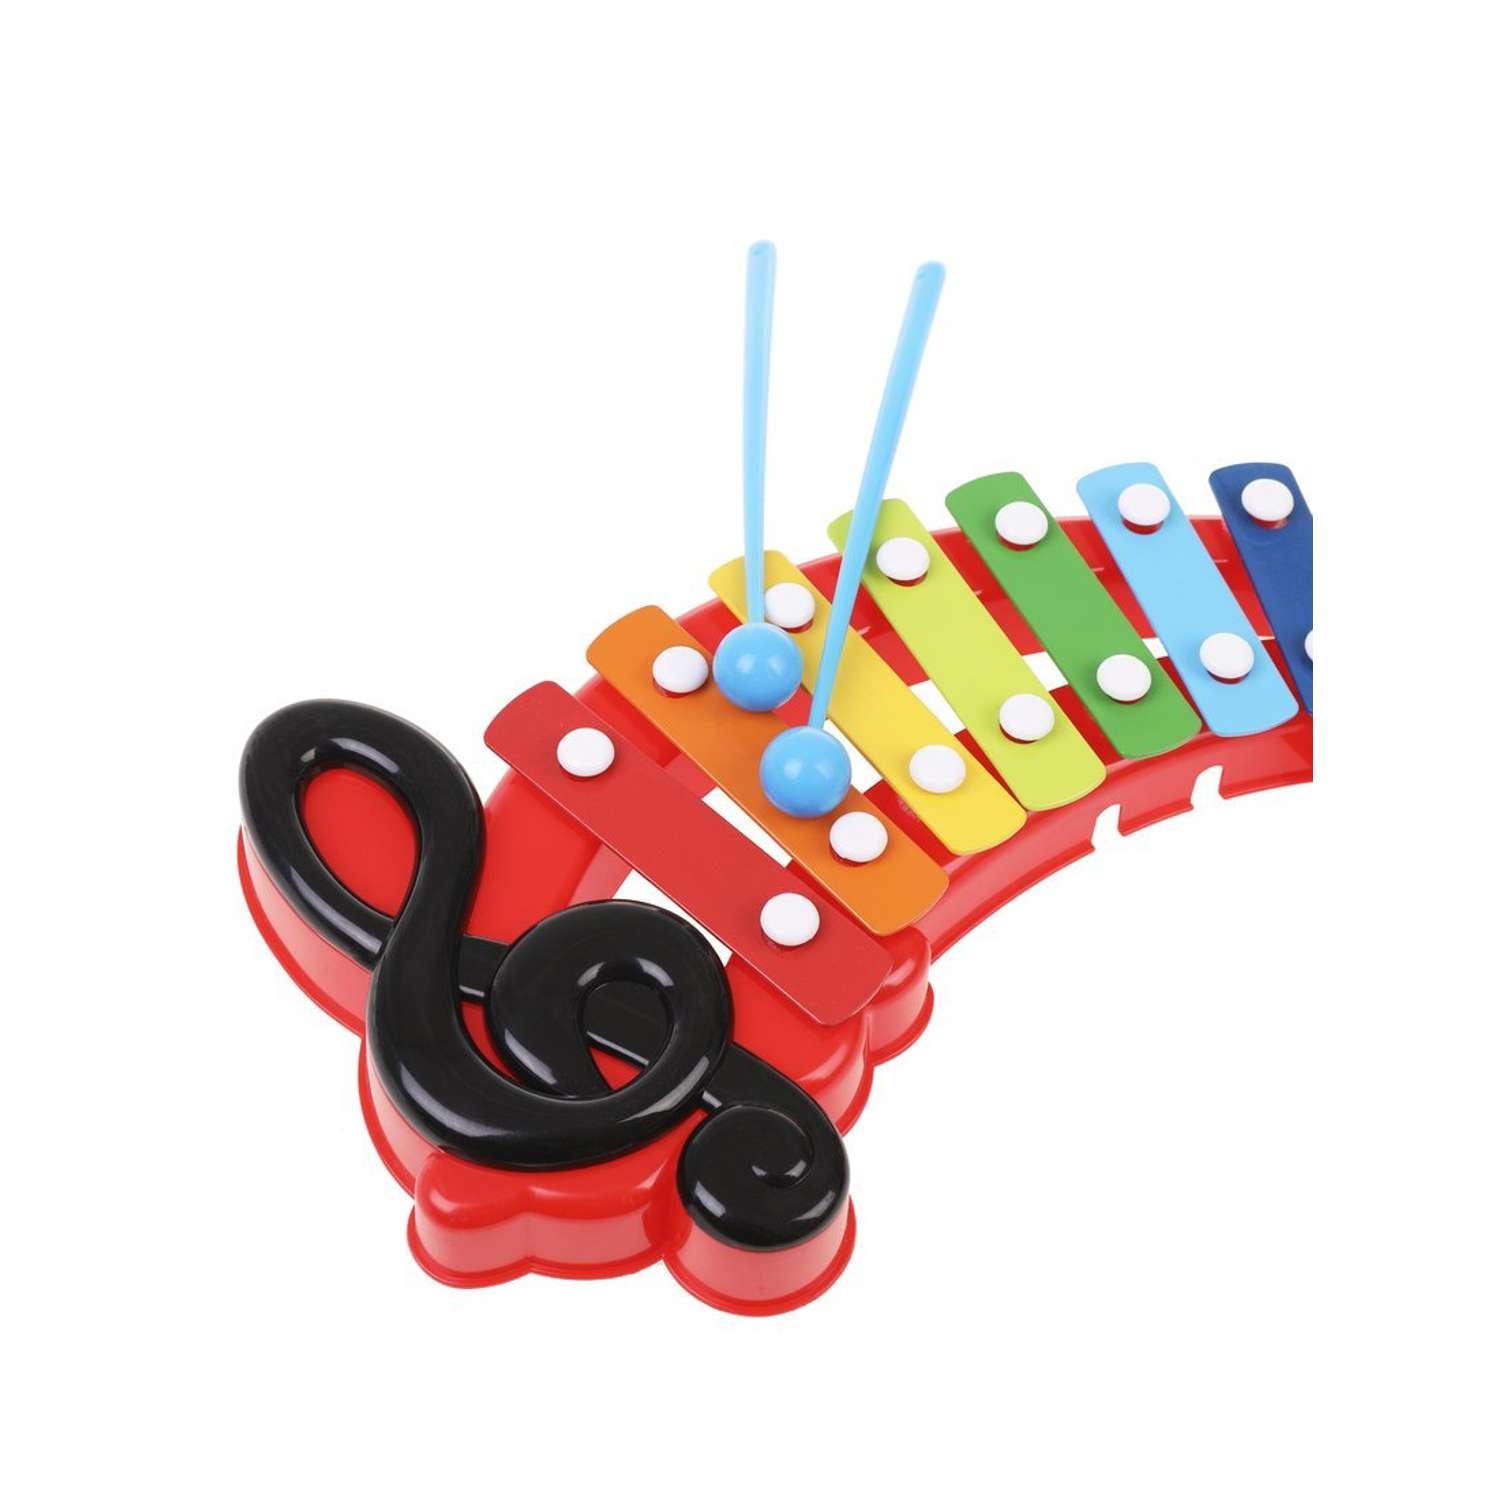 Ксилофон музыкальный Наша Игрушка развивающая игрушка 8 нот - фото 2